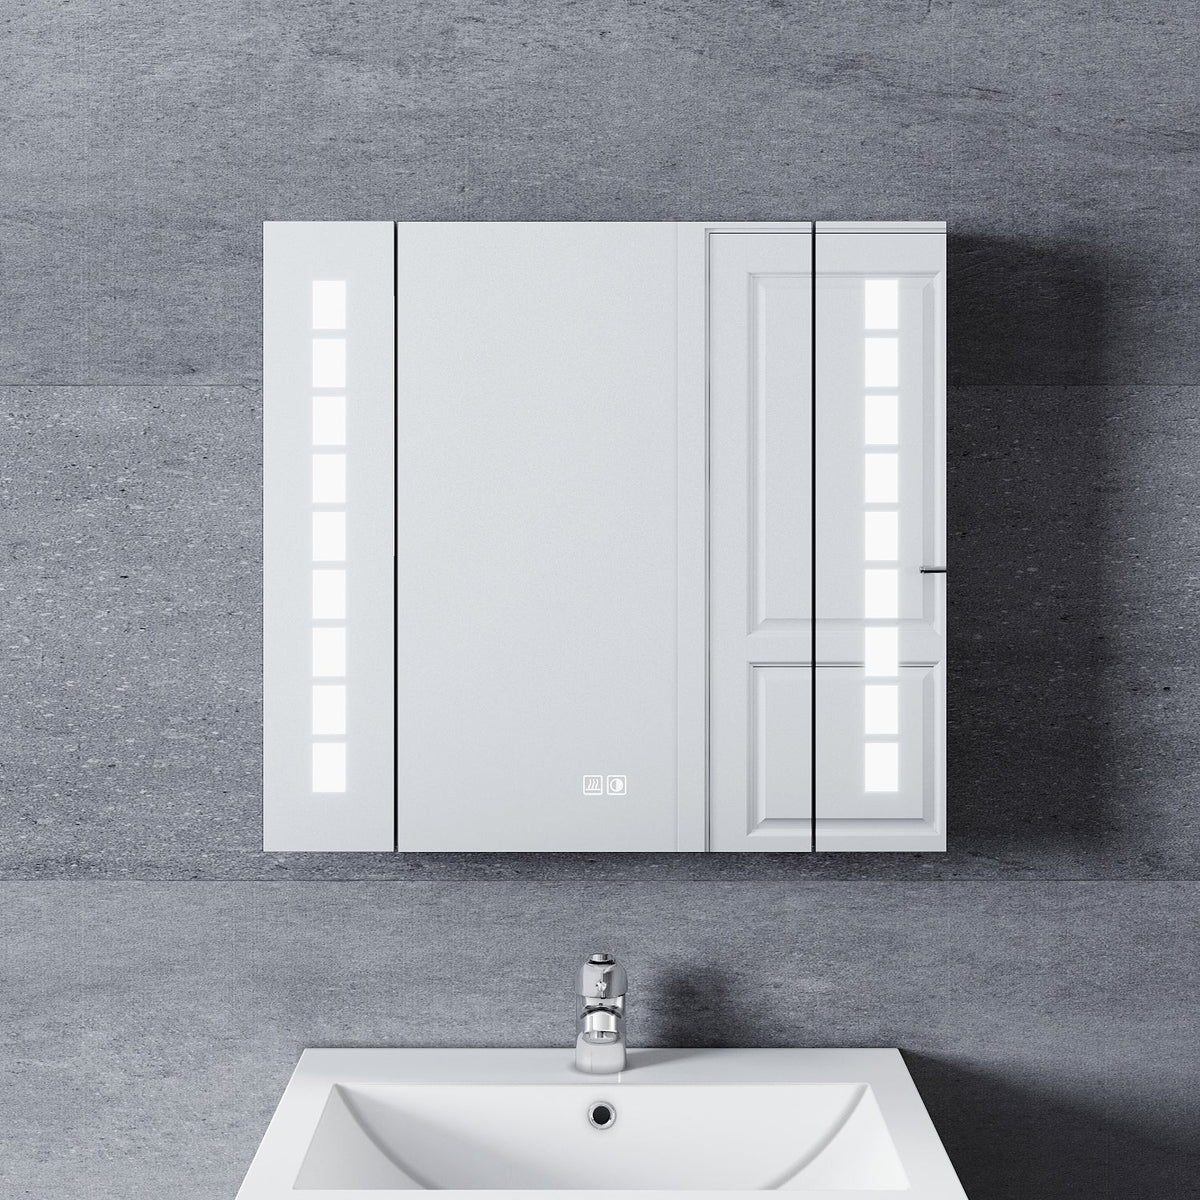 Aluminum Spiegelschrank mit Beleuchtung für das Badezimmer wasserdicht Lichtdurchlässigkeit beschlagfrei mit Steckdose LED Spiegelschrank